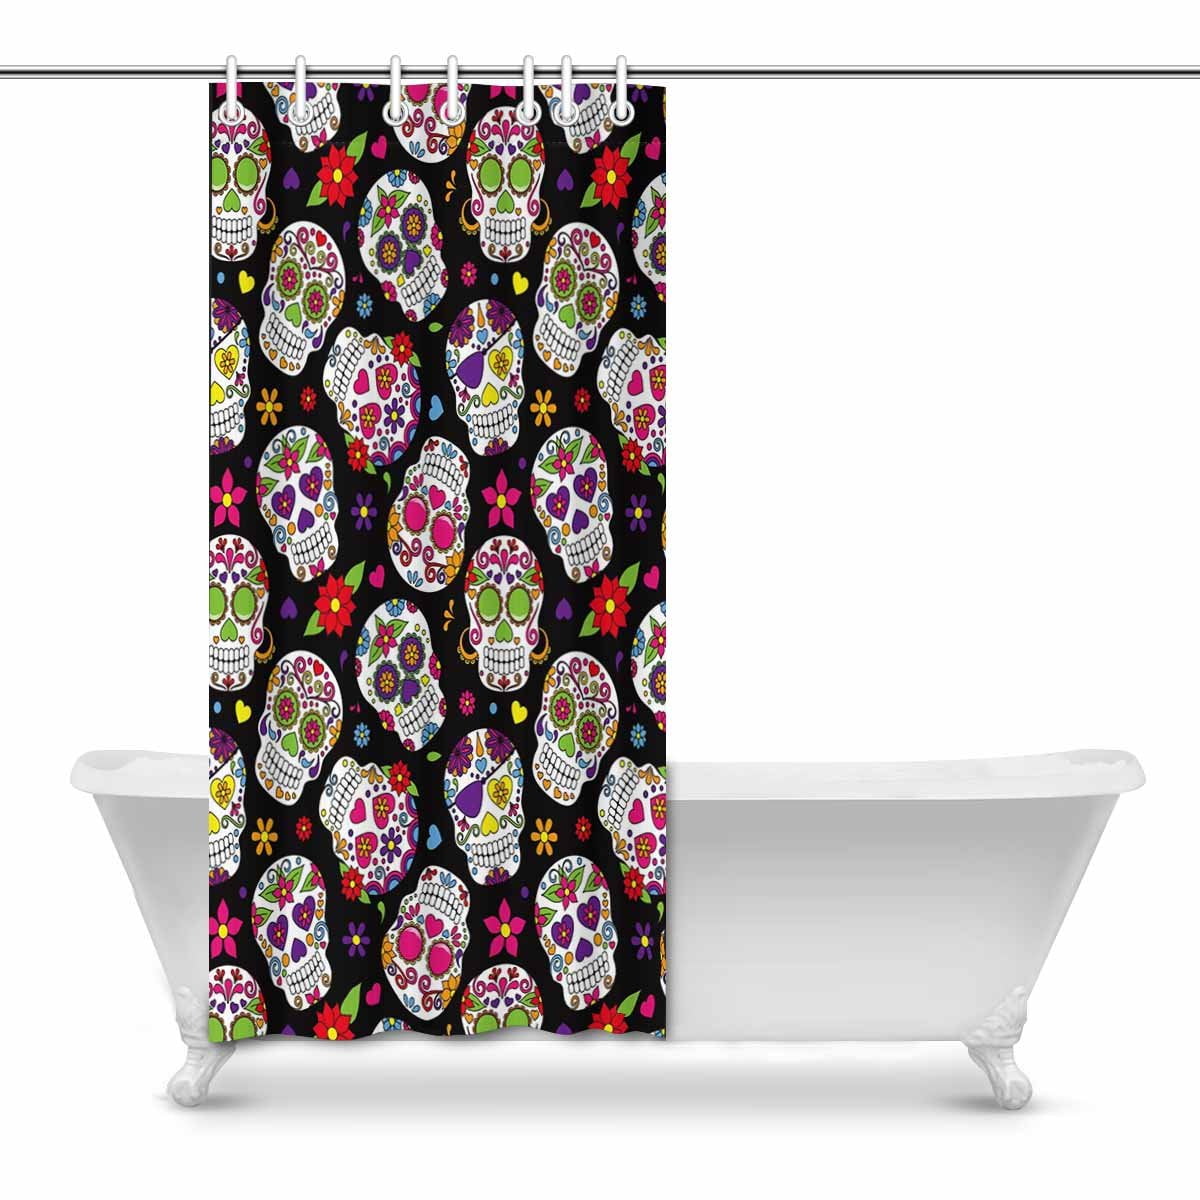 Bathroom Decor Shower Curtain Set, Mexican Style Shower Curtain